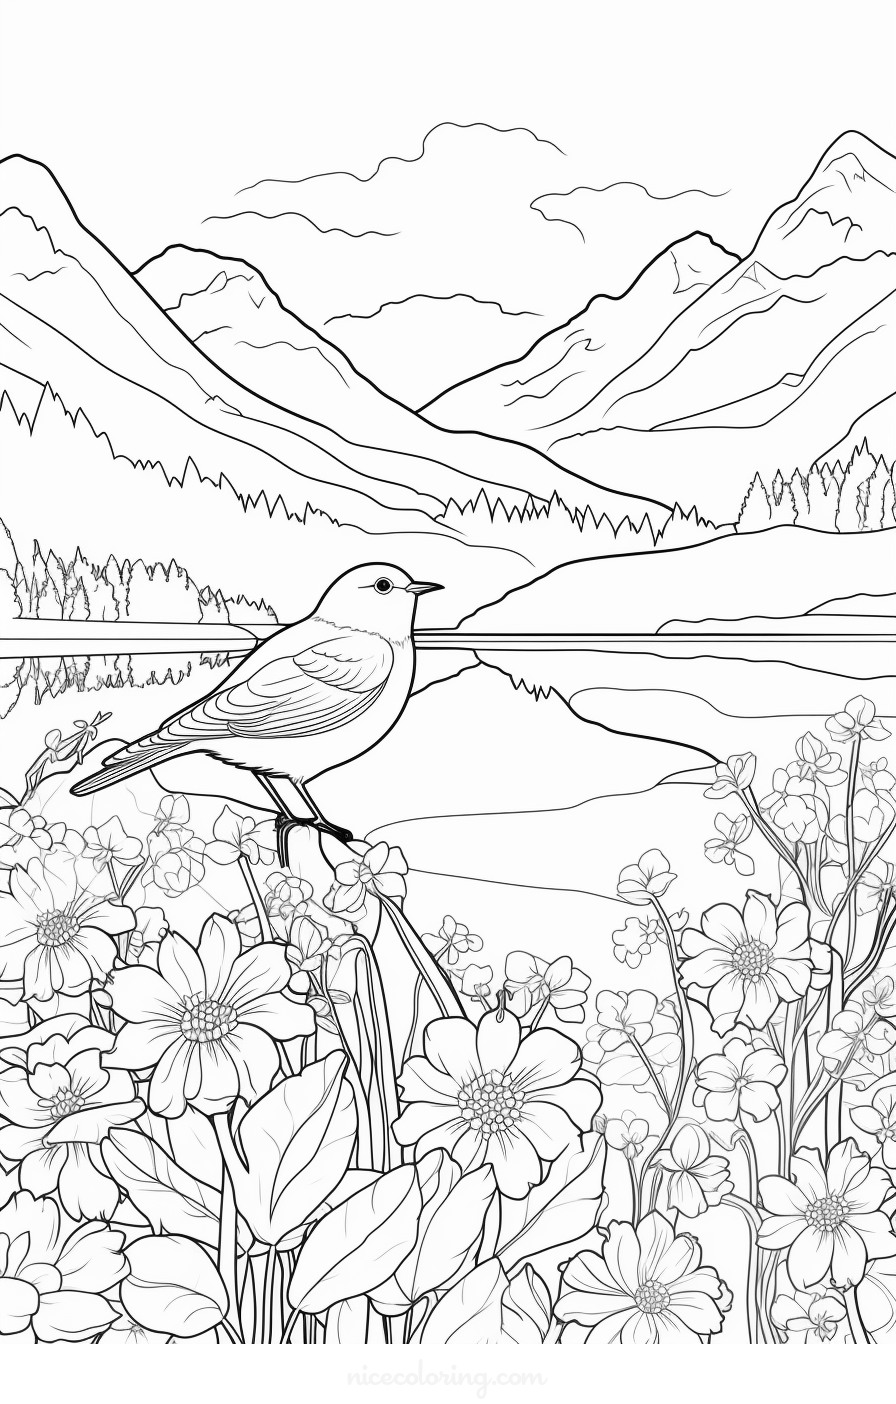 Una escena de varias aves en un entorno forestal para colorear